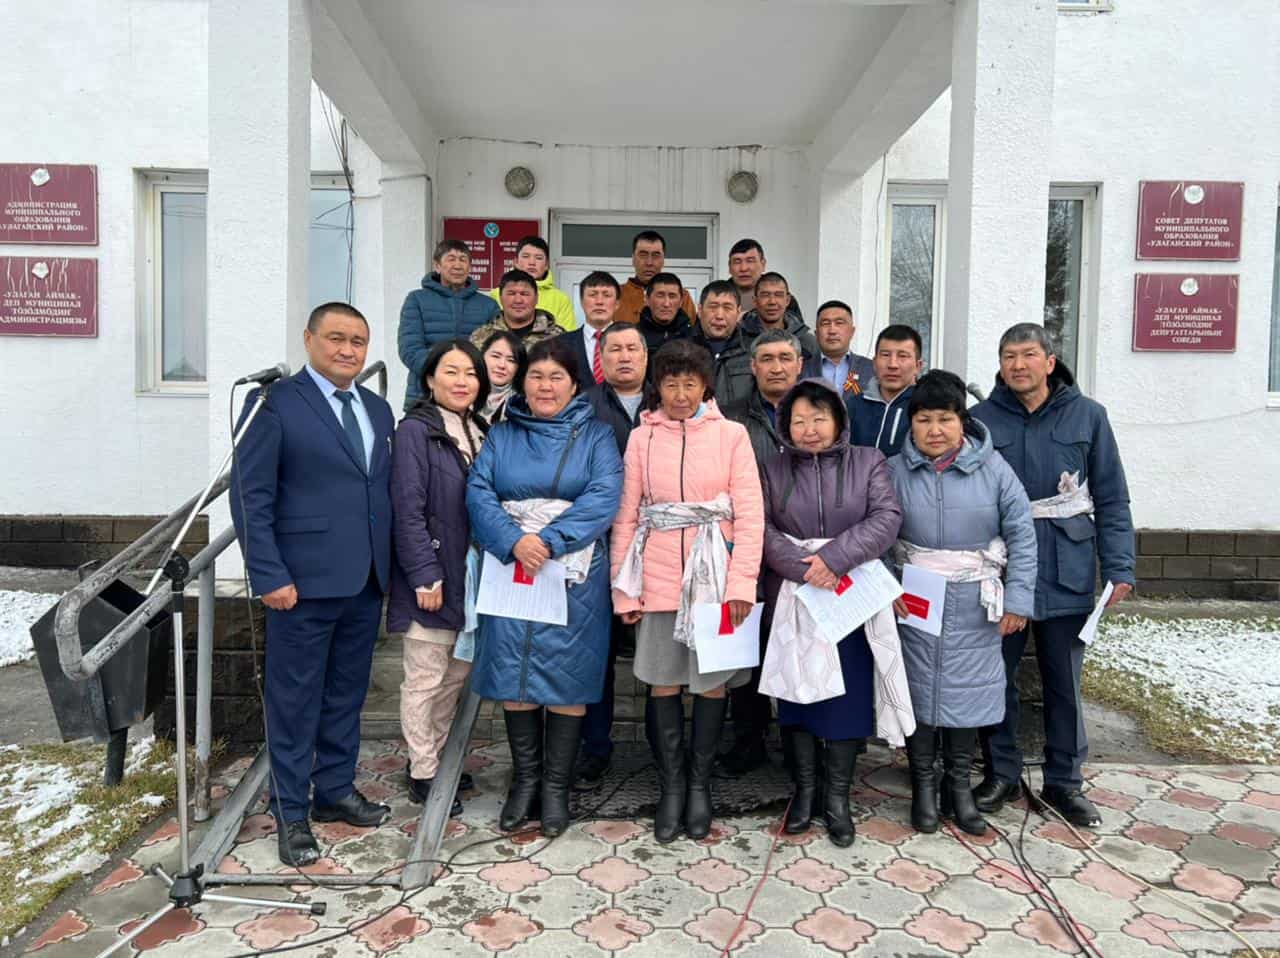 Людей труда чествуют сегодня по всей Республике Алтай